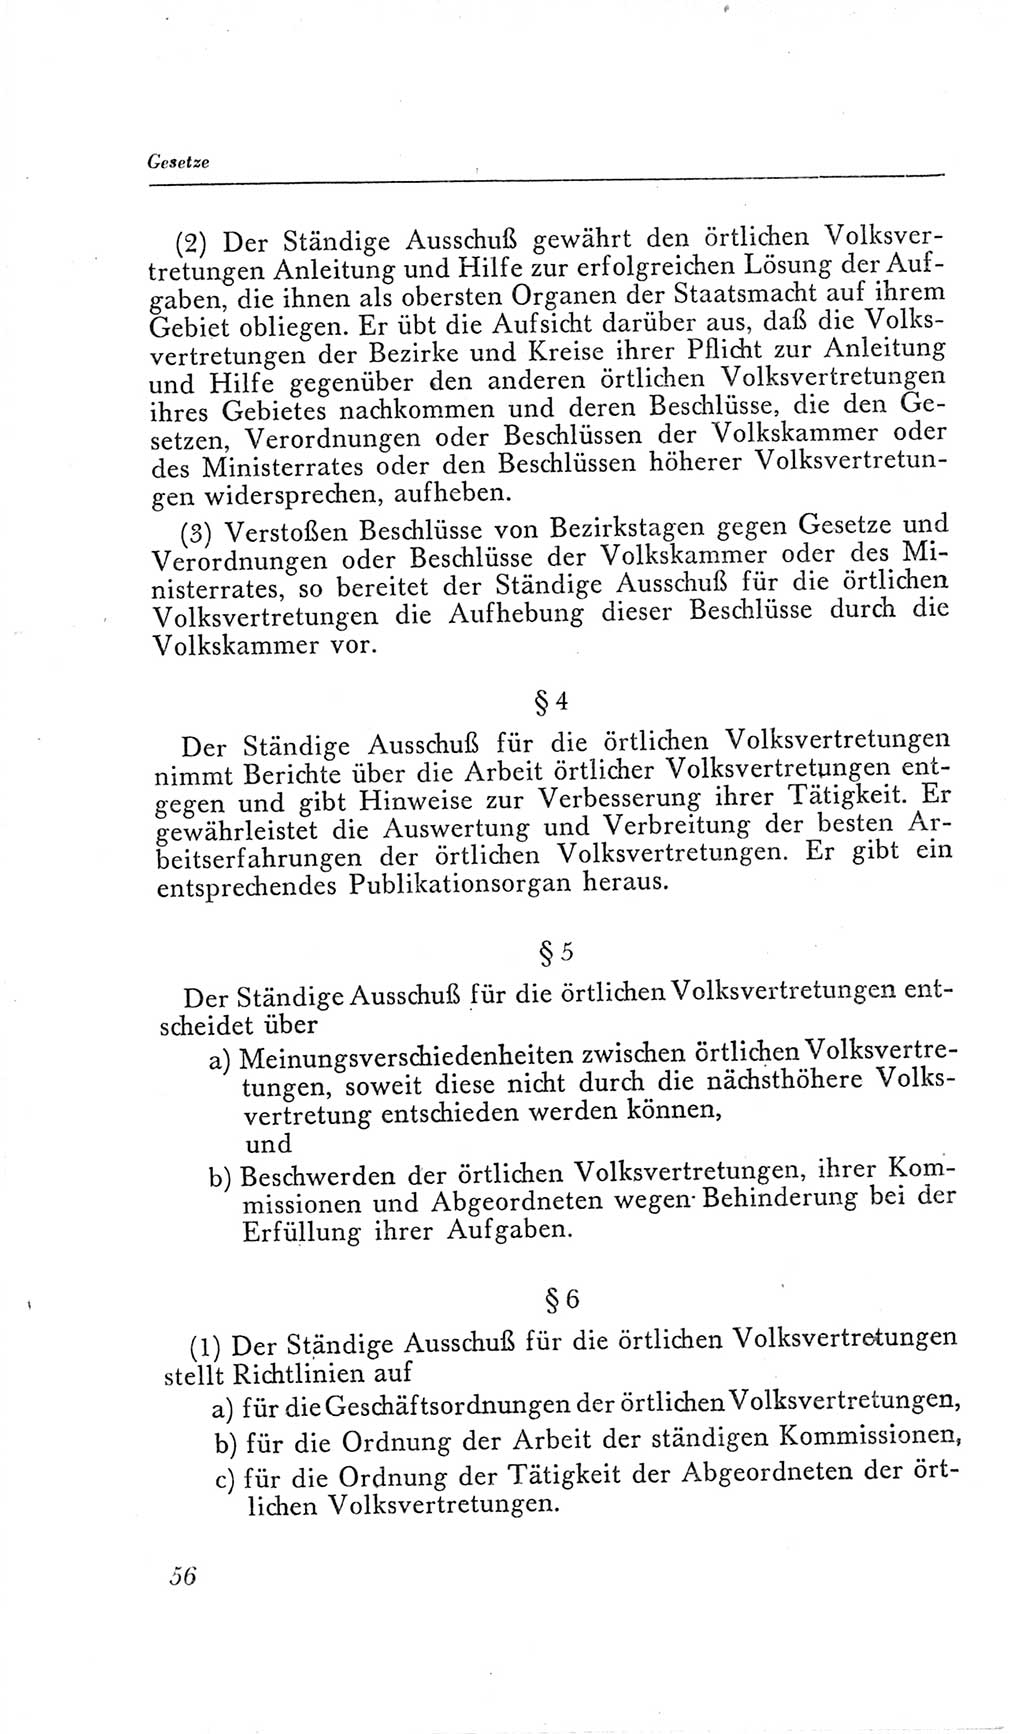 Handbuch der Volkskammer (VK) der Deutschen Demokratischen Republik (DDR), 2. Wahlperiode 1954-1958, Seite 56 (Hdb. VK. DDR, 2. WP. 1954-1958, S. 56)